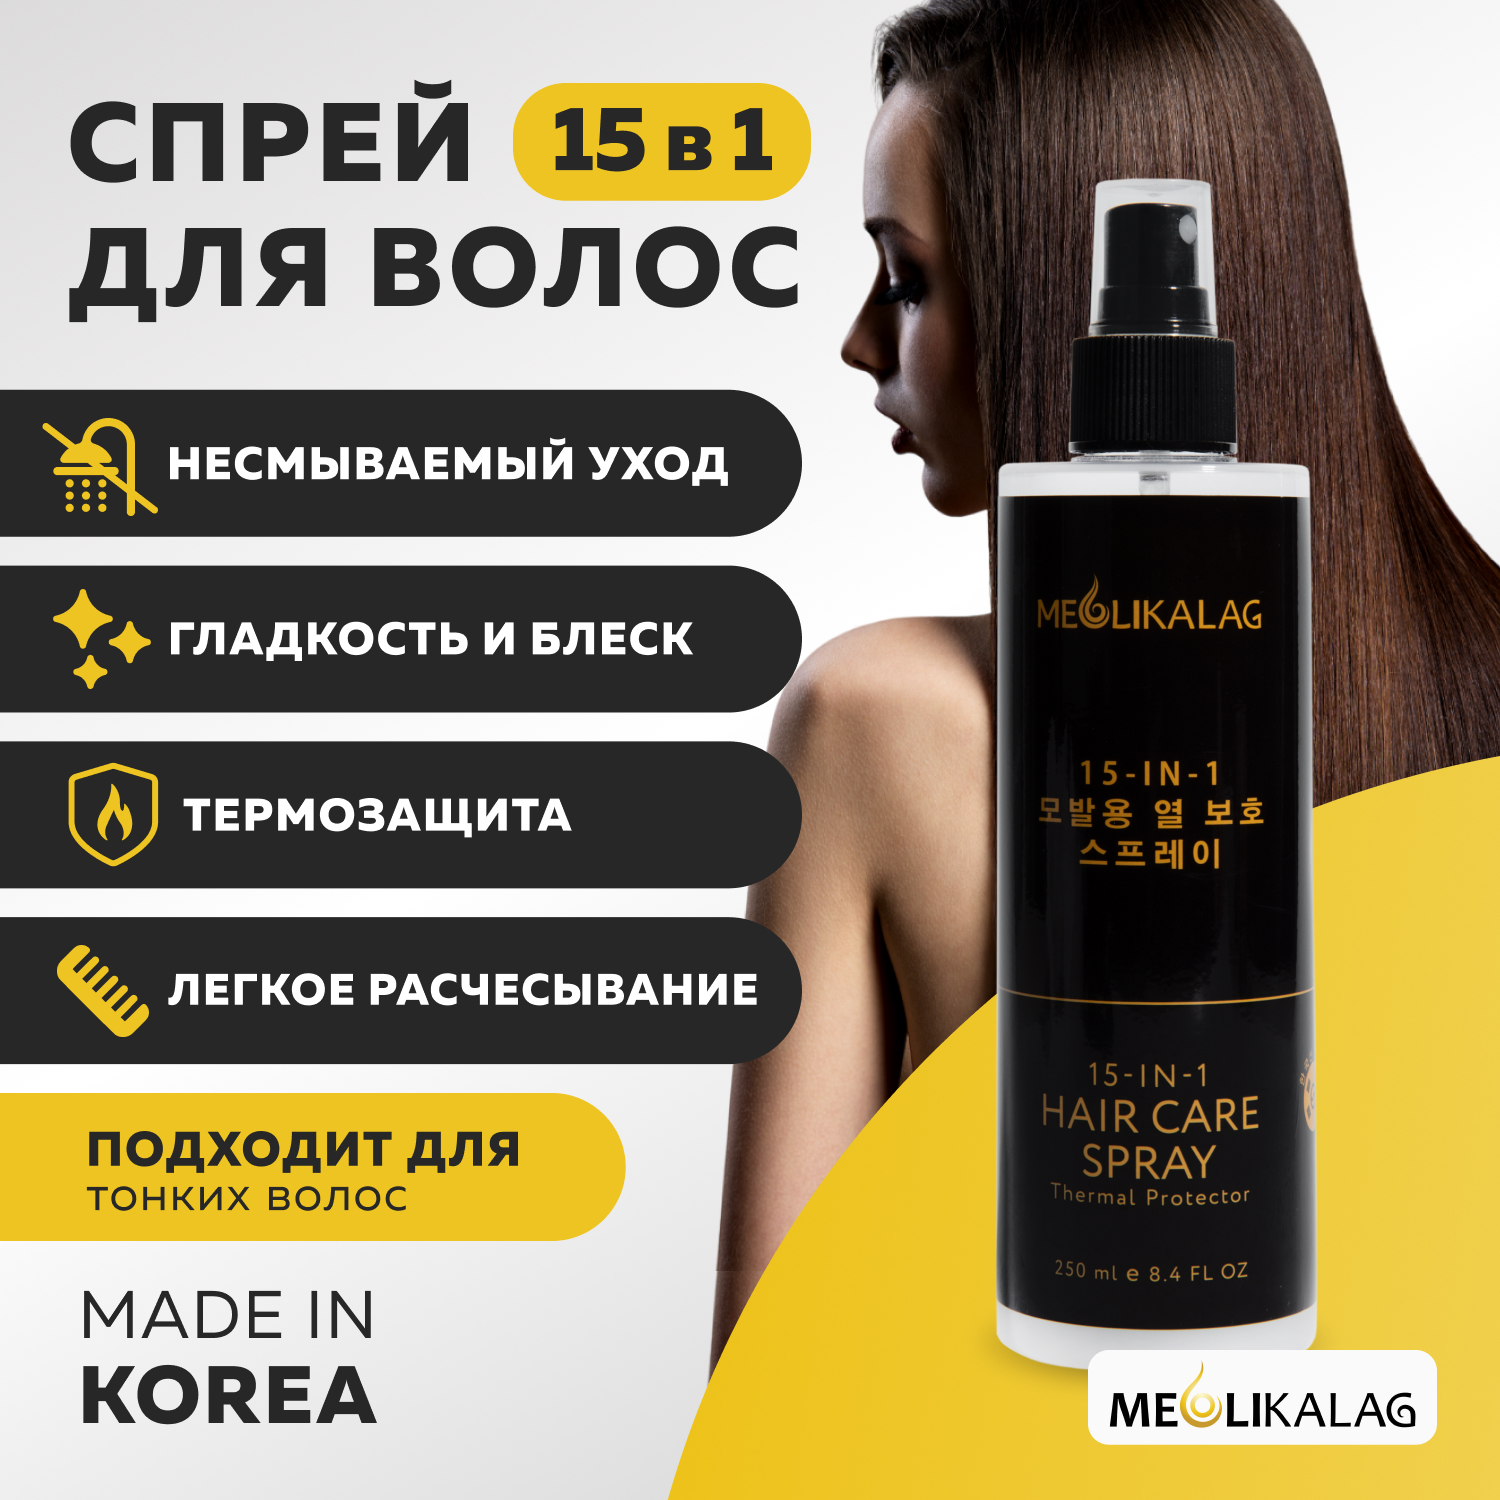 Несмываемый спрей термозащита MEOLI для волос 15-в-1 бриллиантовый блеск–спрей для защиты волосы от высокой температуры lucilla